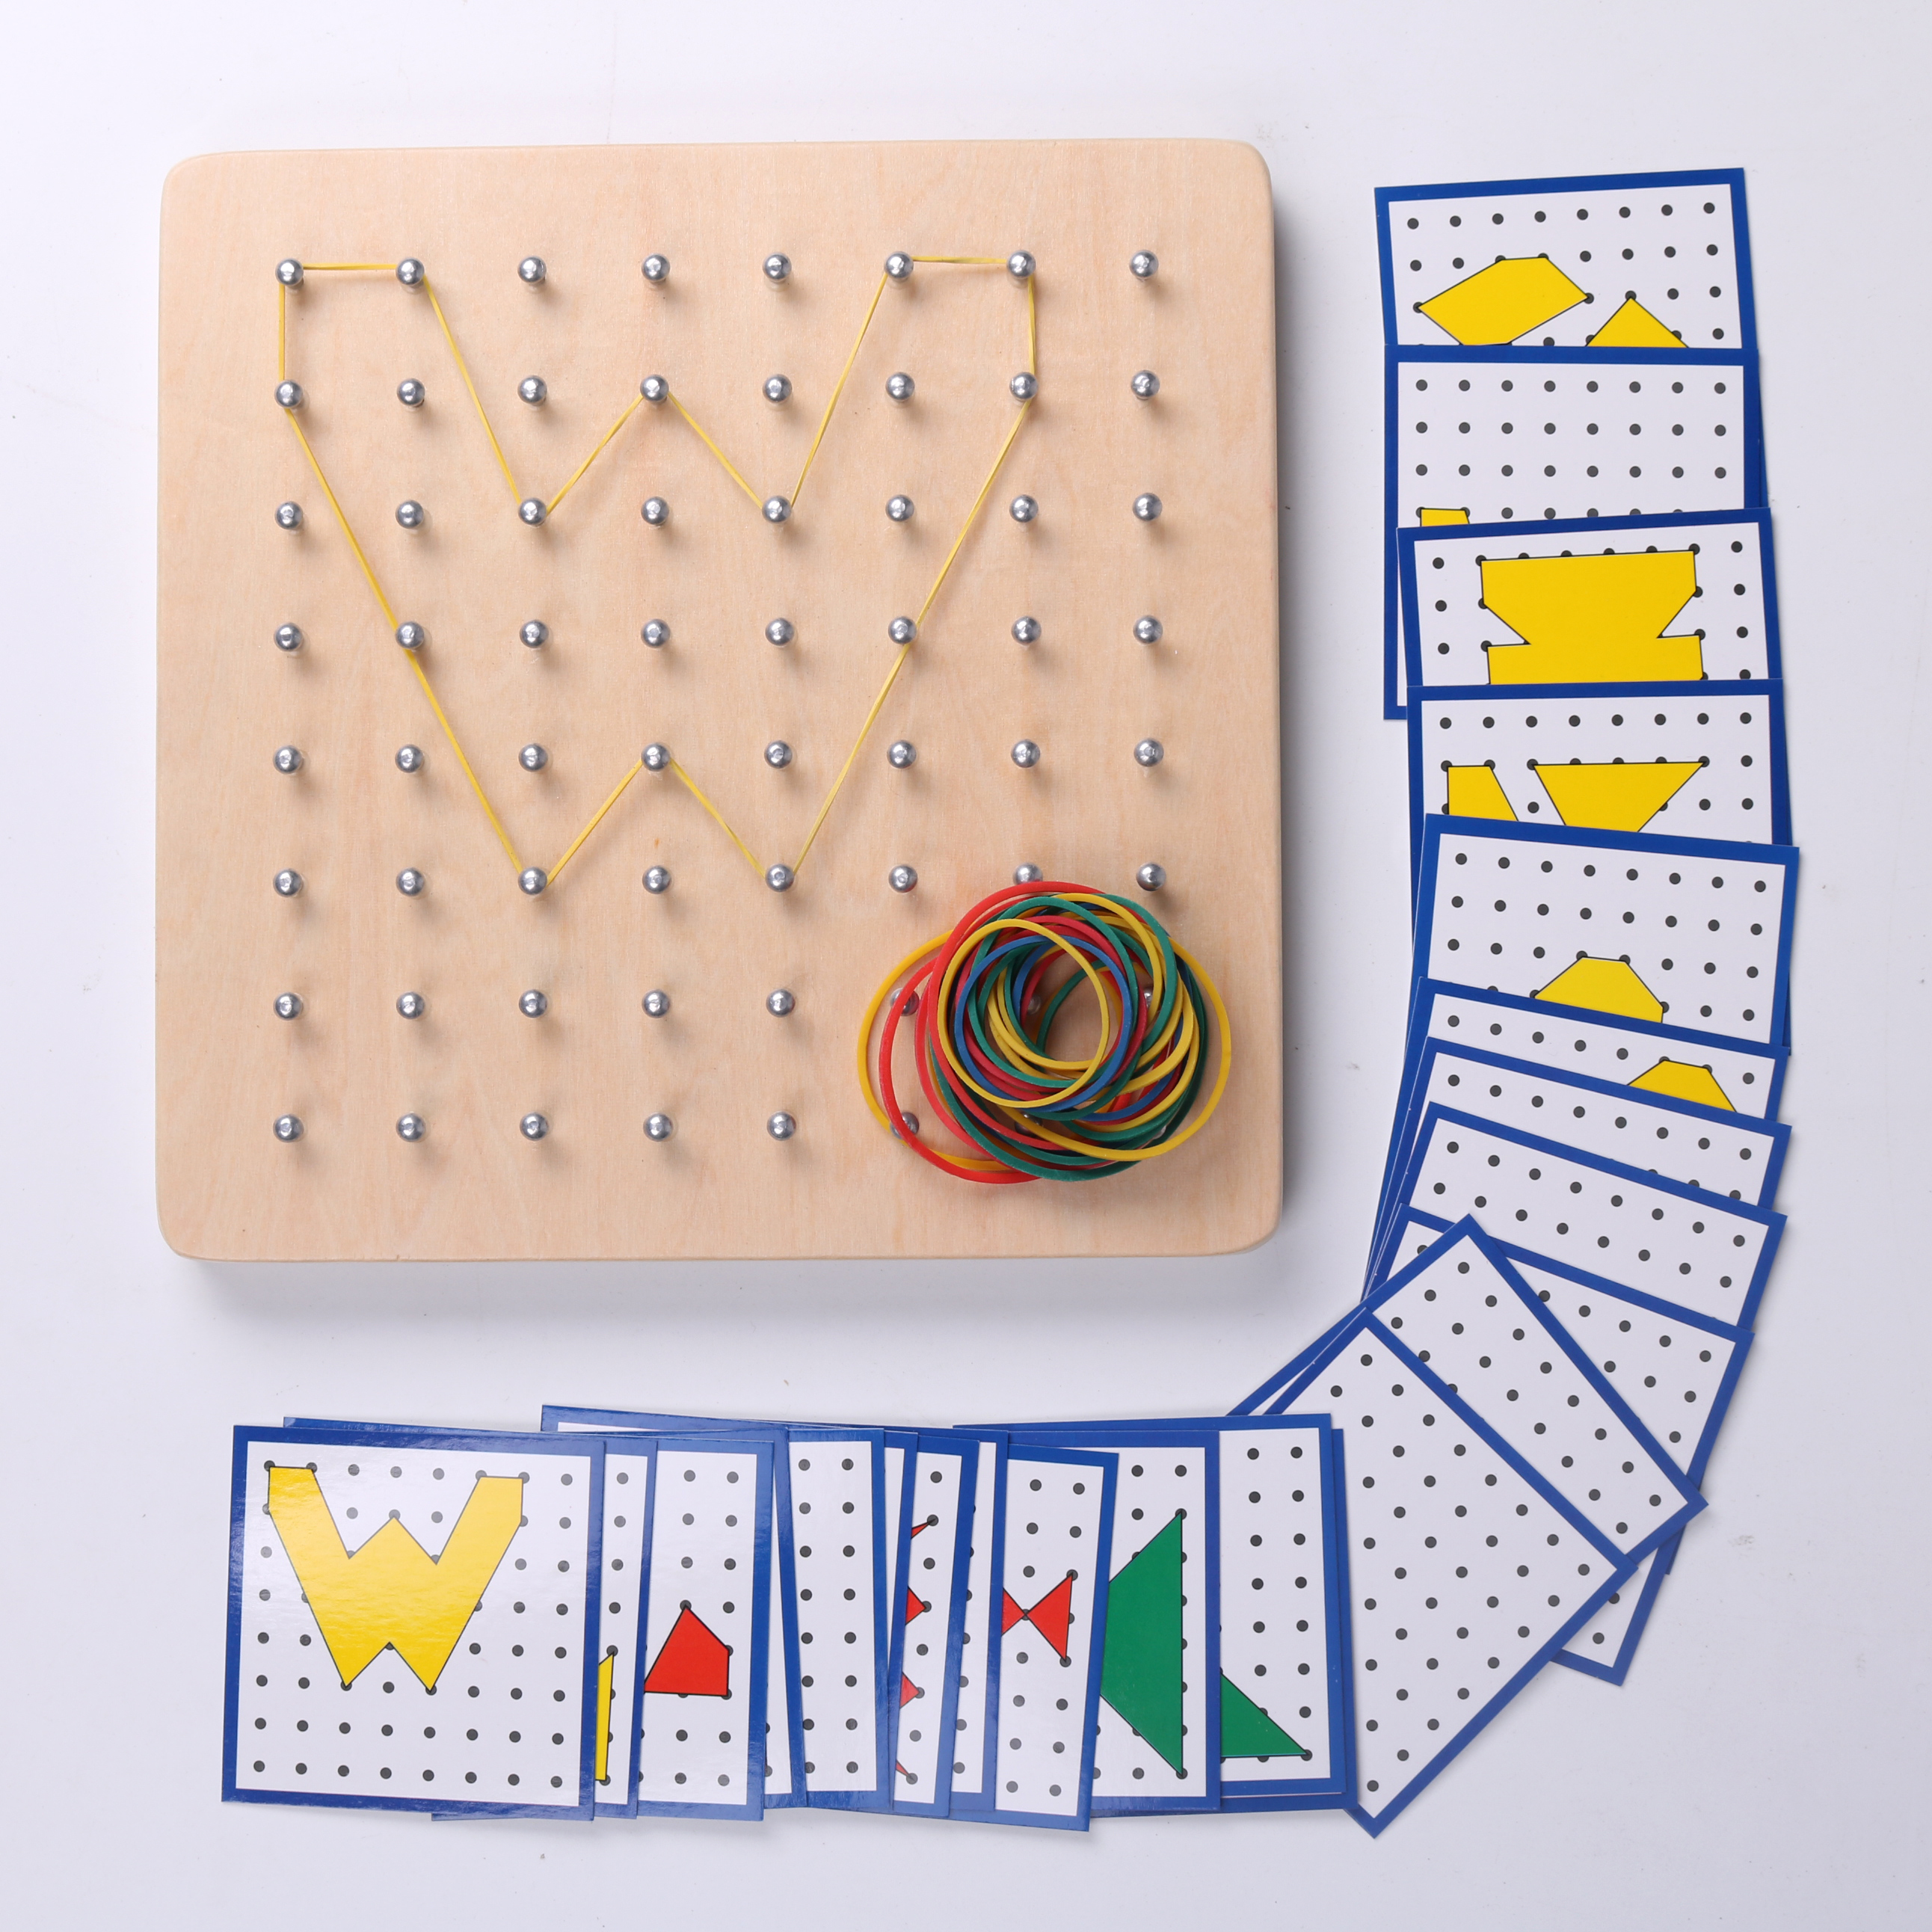 蒙氏几何数学教具钉板儿童学数学橡皮筋图形教具拼图早教益智玩具